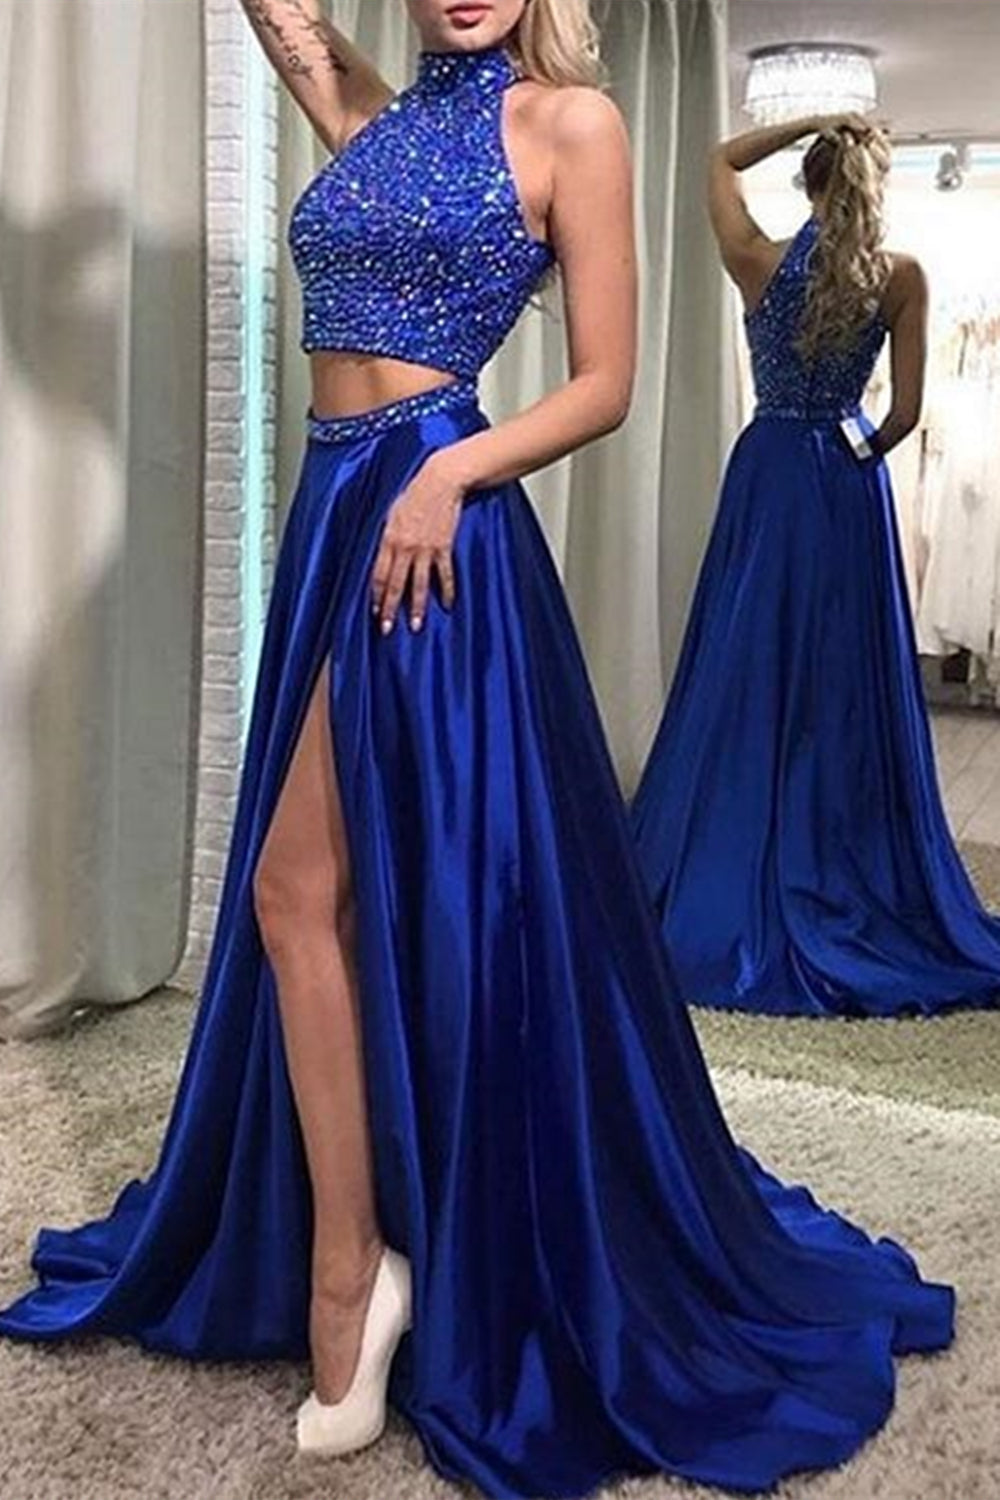 halterneck blue dress